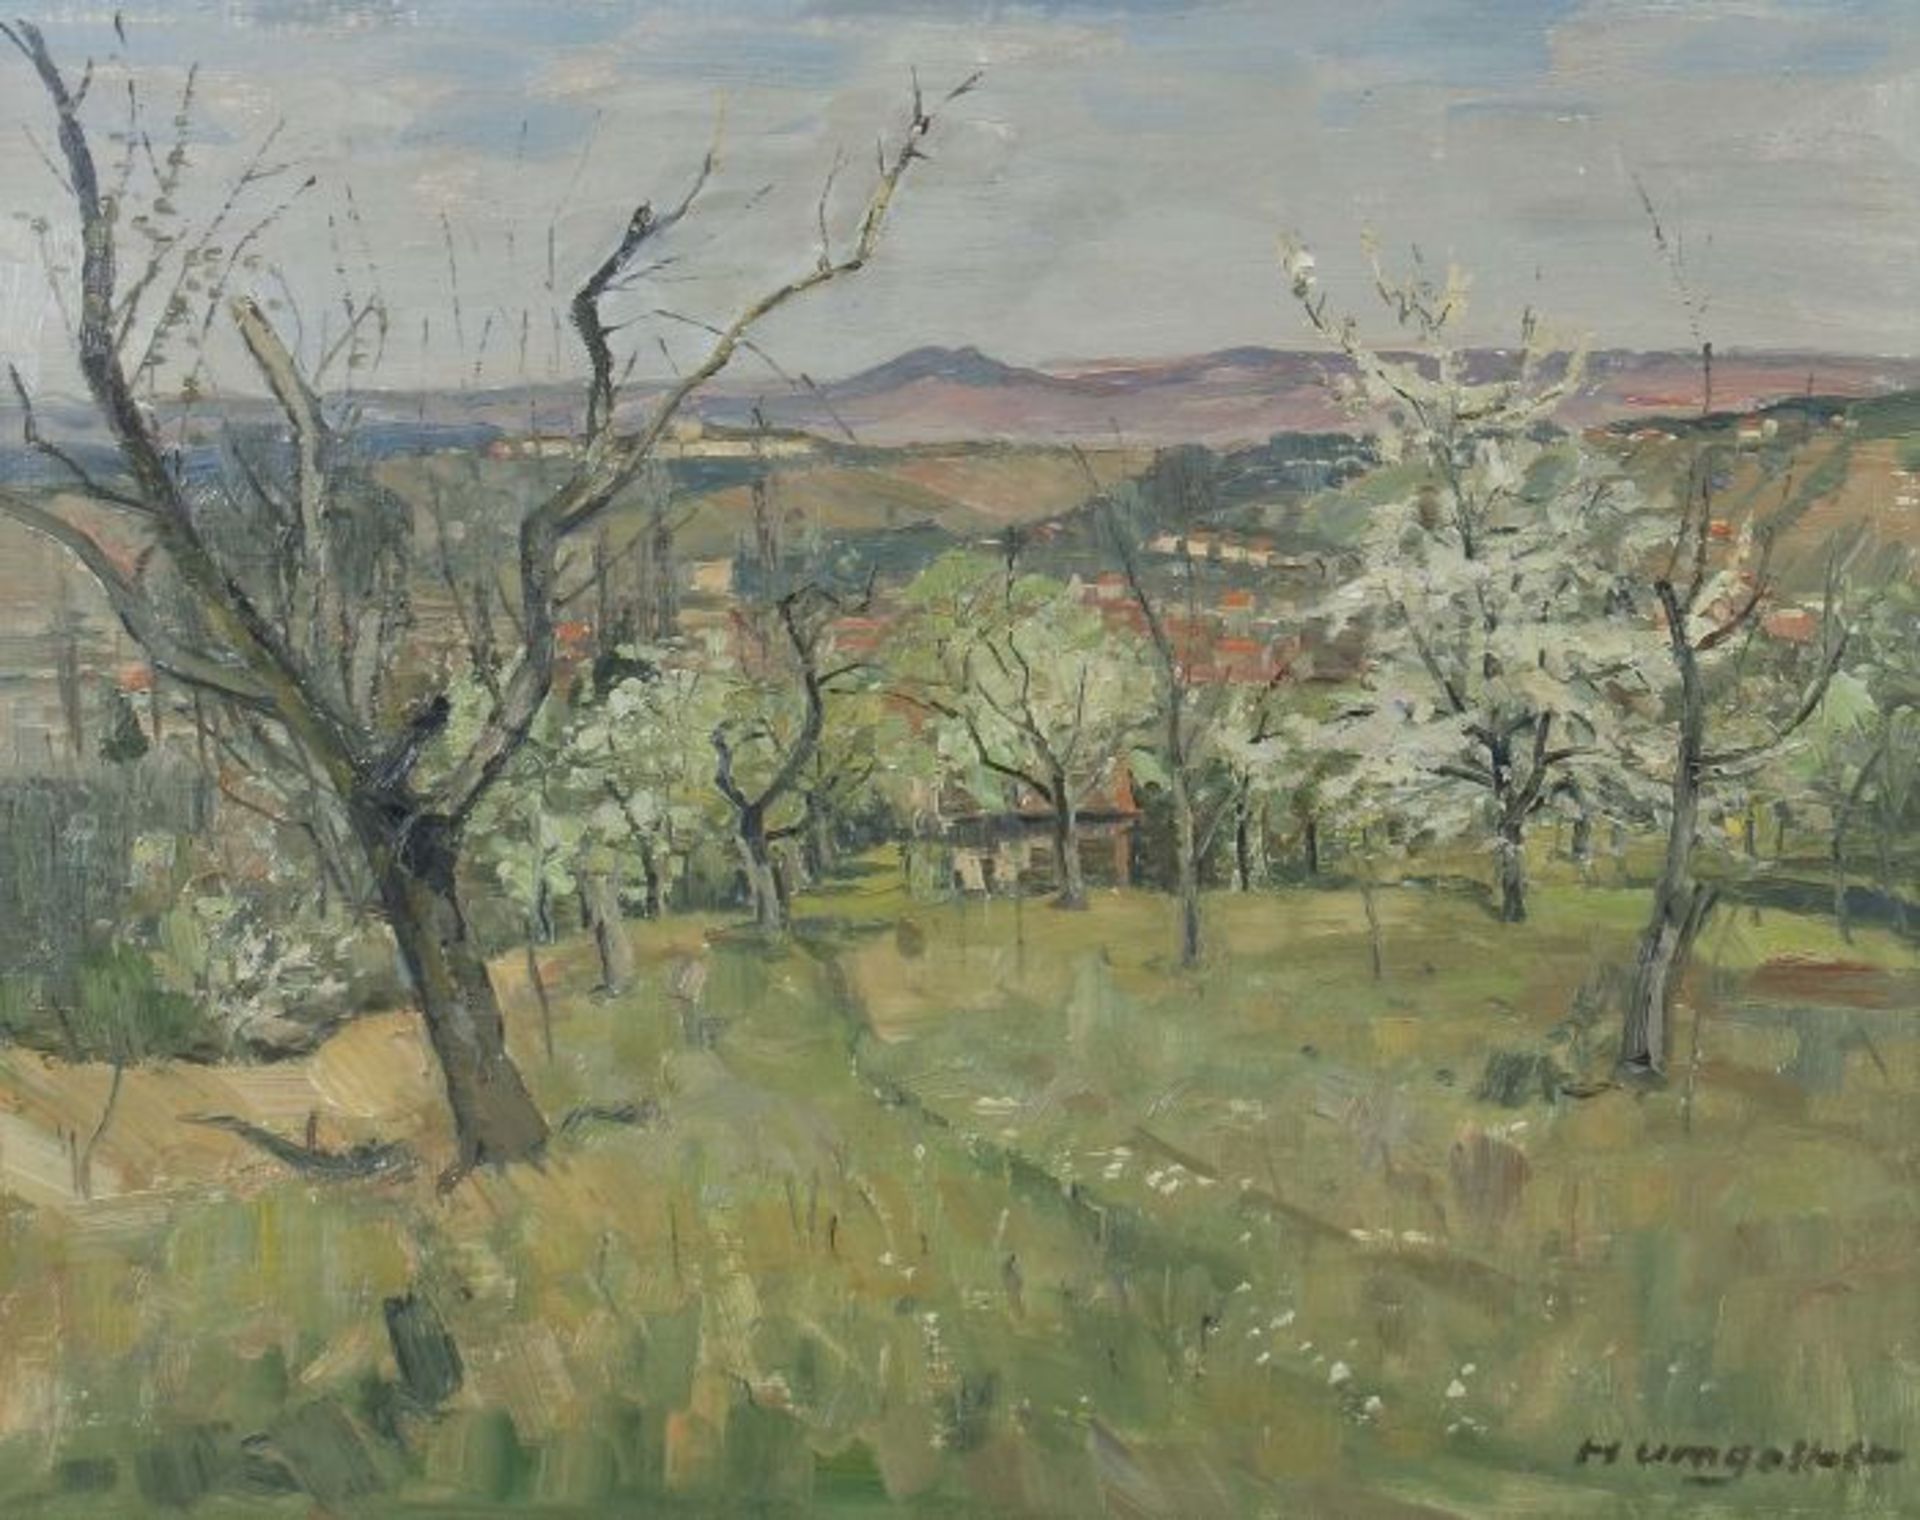 Umgelter, Hermann Stuttgart 1891 - 1962 ebenda, Landschaftsmaler in Stuttgart. "Schwäbische